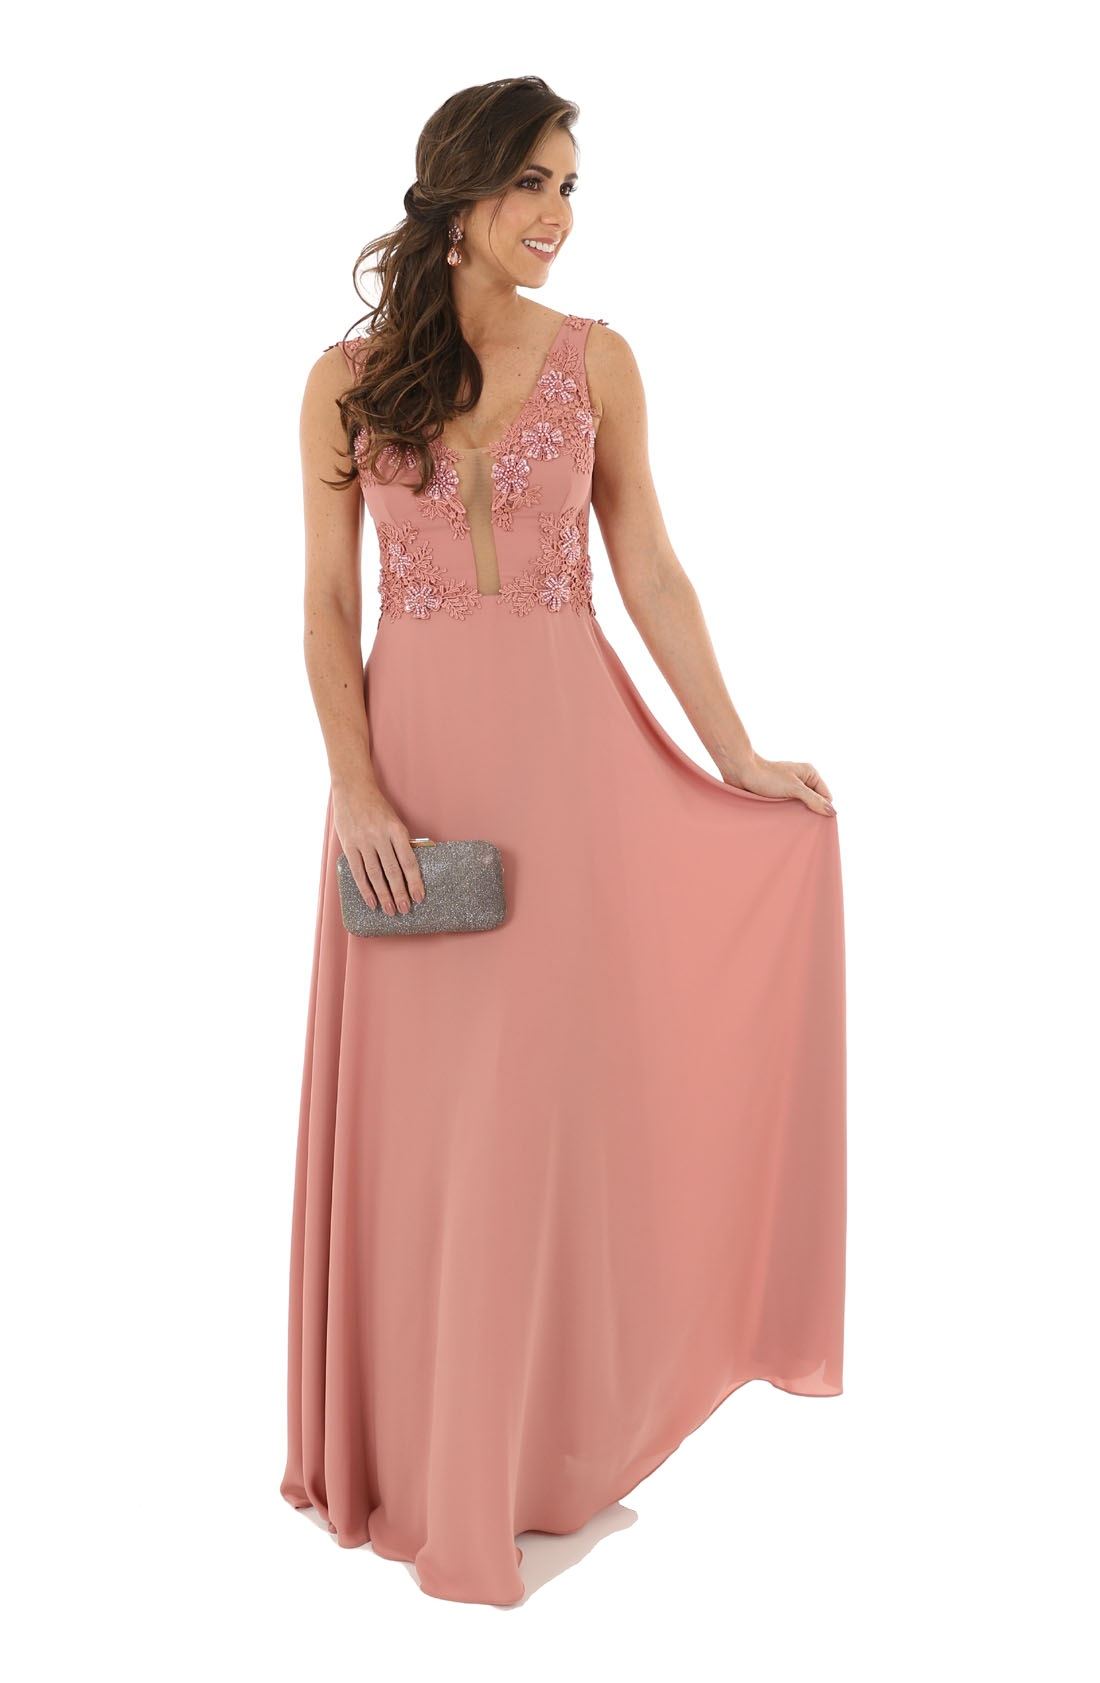 comprar vestido rosa